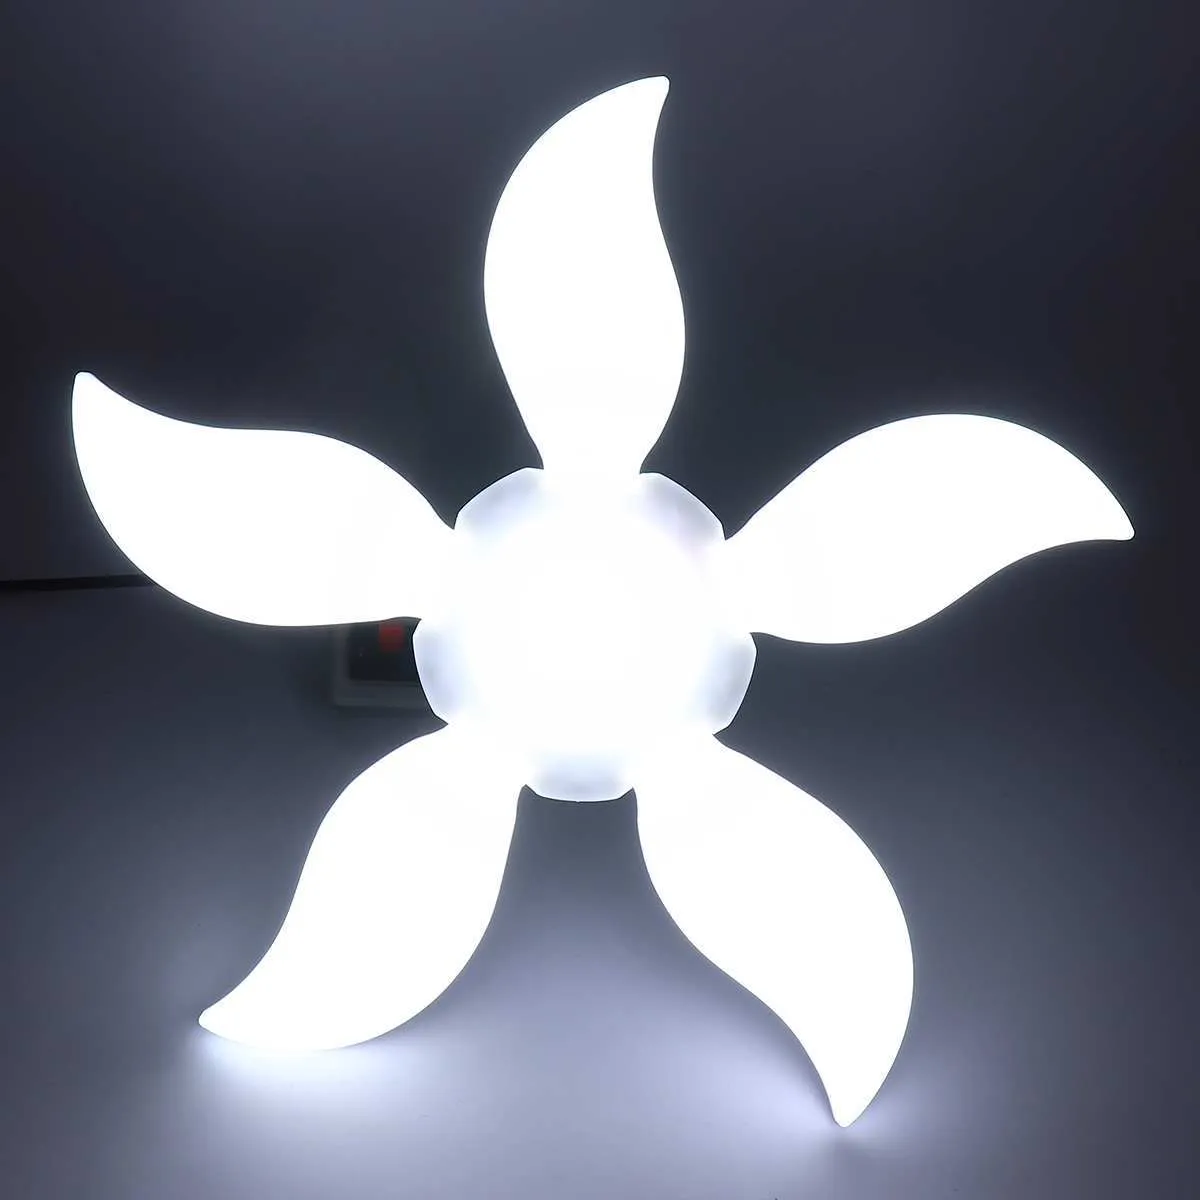 LED Five-Leaf Folding LED Żarówka Fan Multicolour / White LED Garaż światła warsztatowa deformowalna warsztat sufitowy